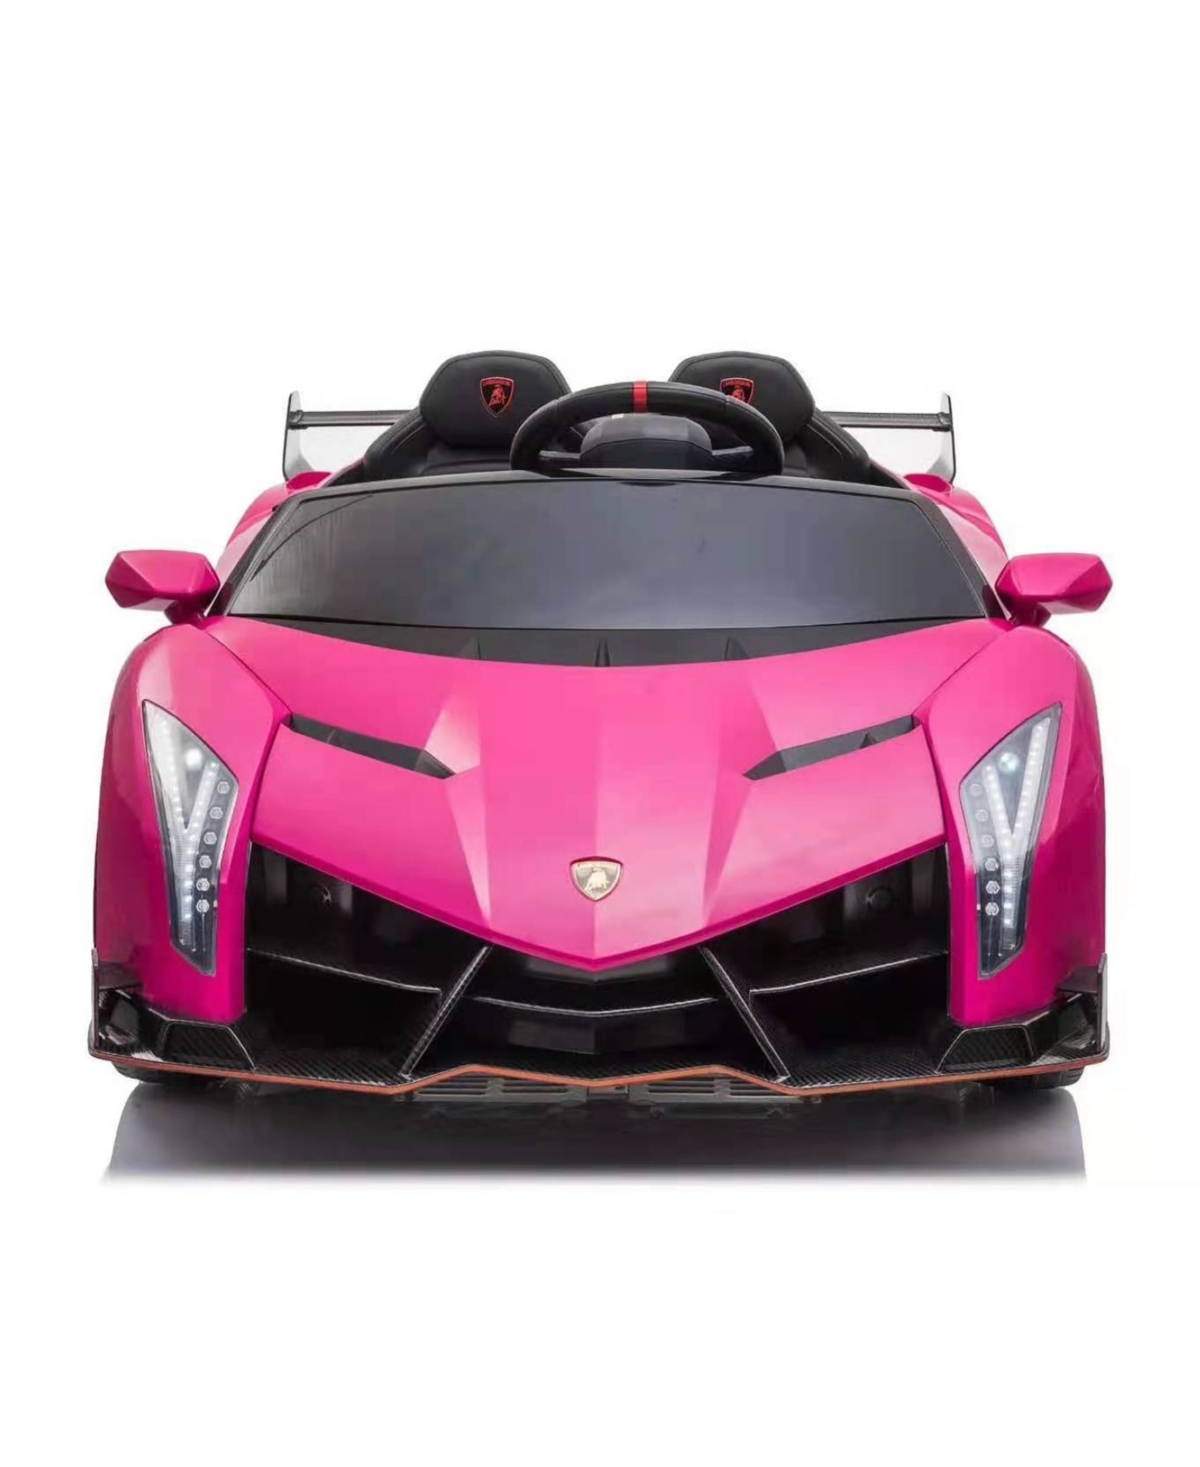 Freddo Lamborghini Veneno 2 Seater Ride-on Car In Pink